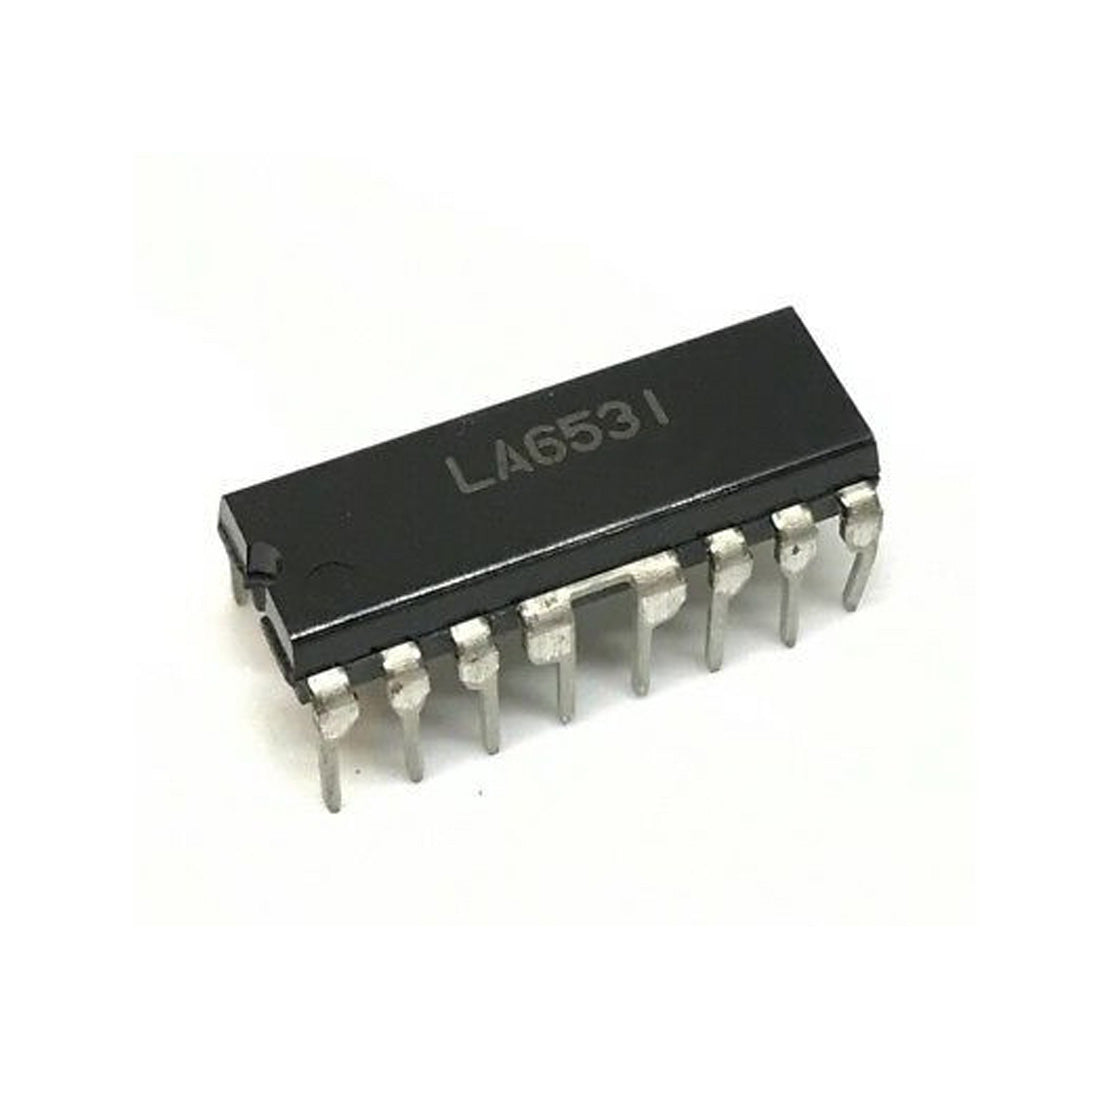 LA6531 Componente elettronico, circuito integrato, transistor, 16 contatti